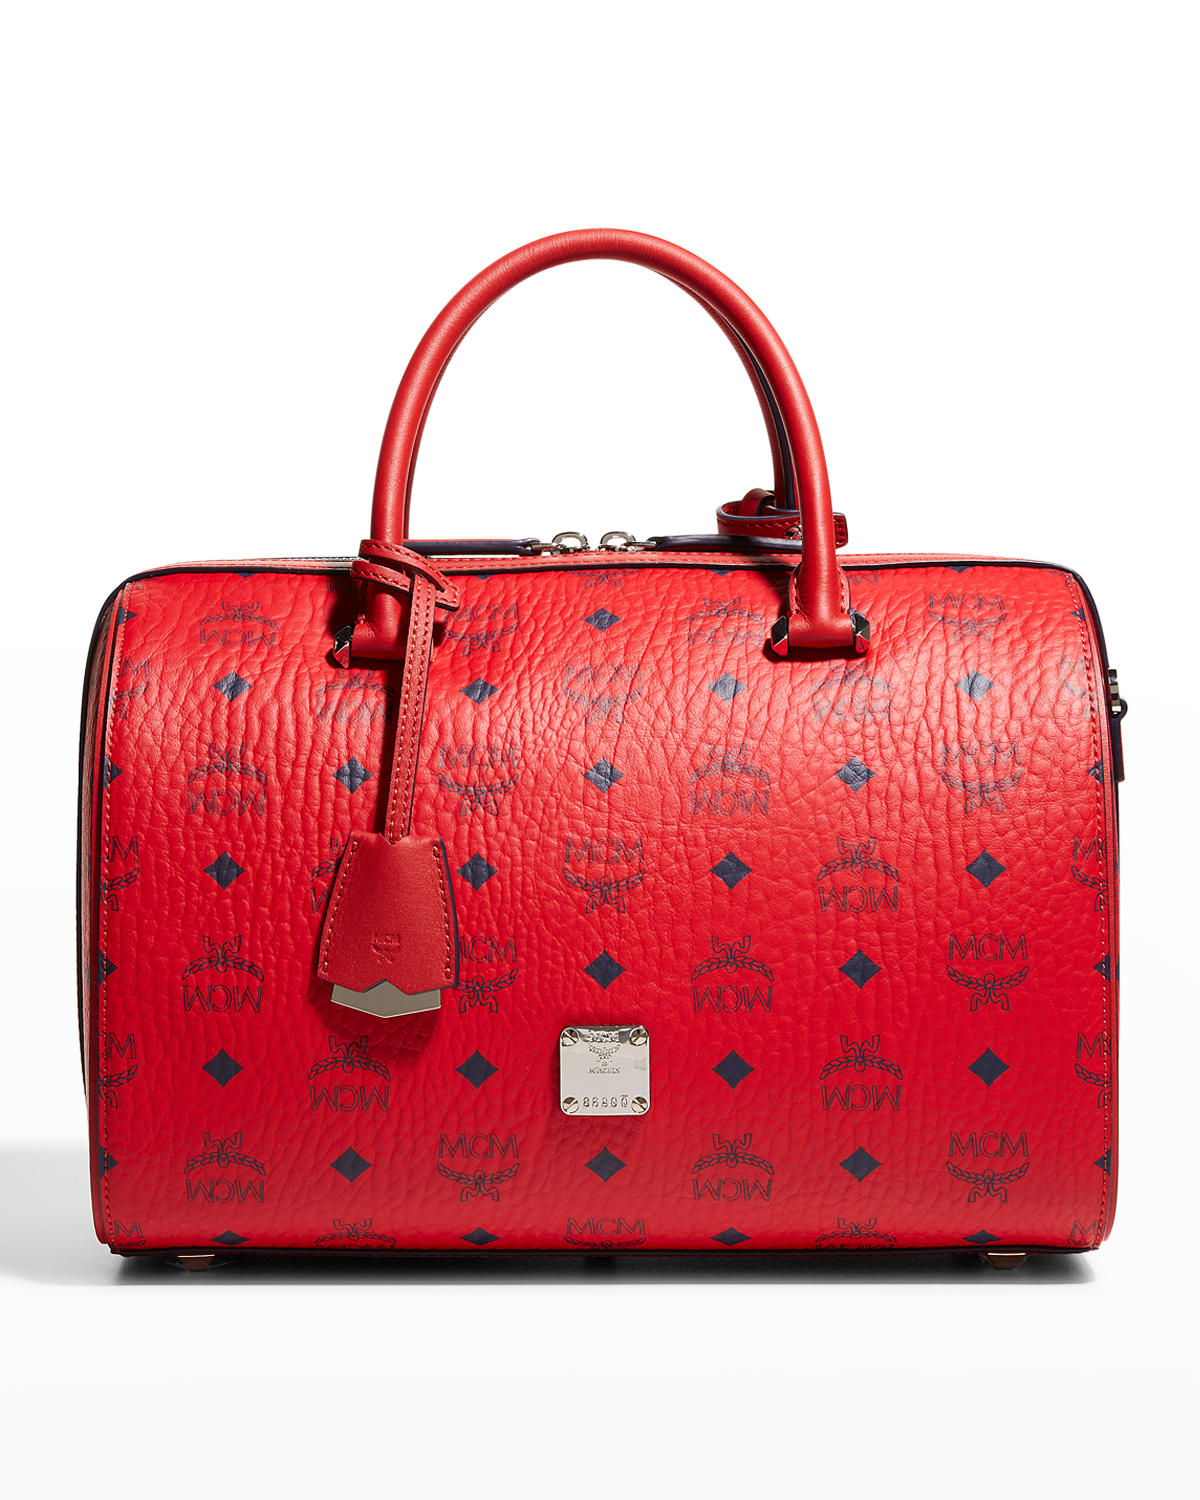 Salvatore Ferragamo Margot Medium Leather Top-Handle Bag | Neiman Marcus